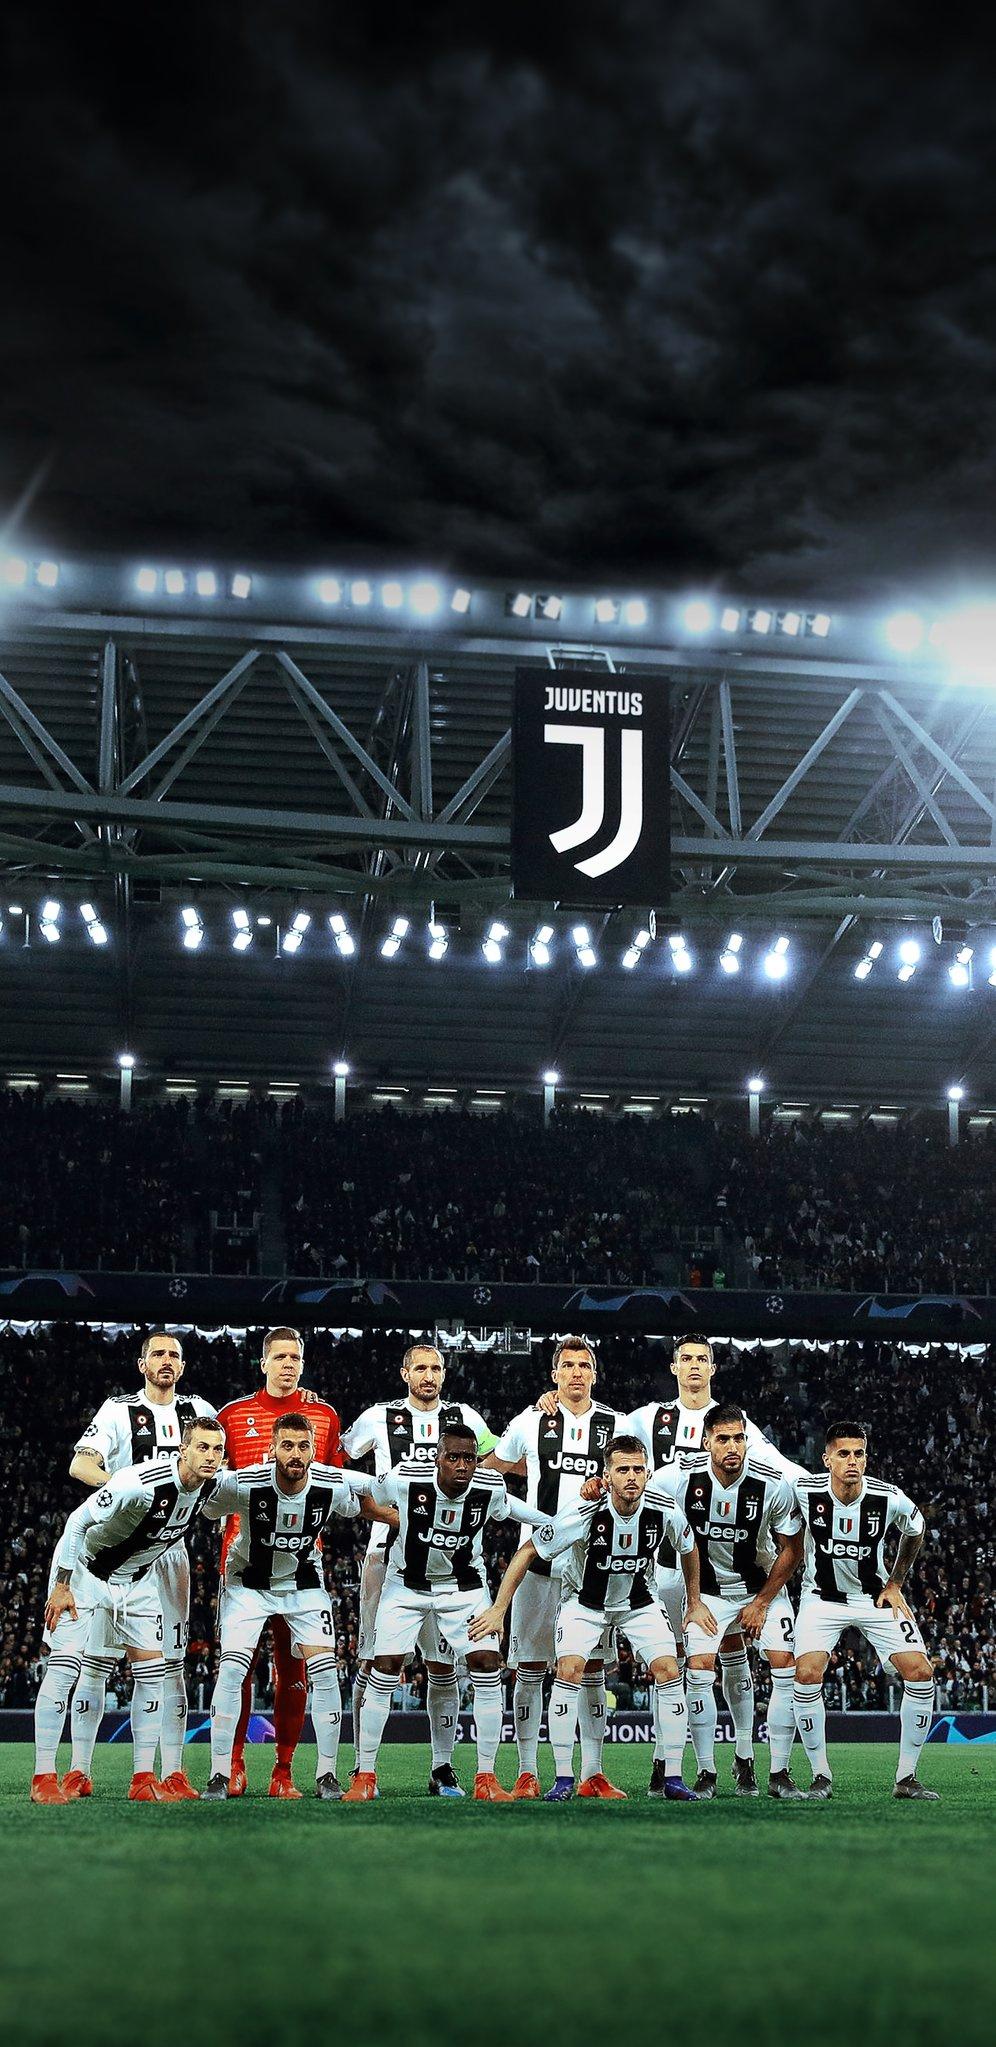 Juventus Wallpaper On